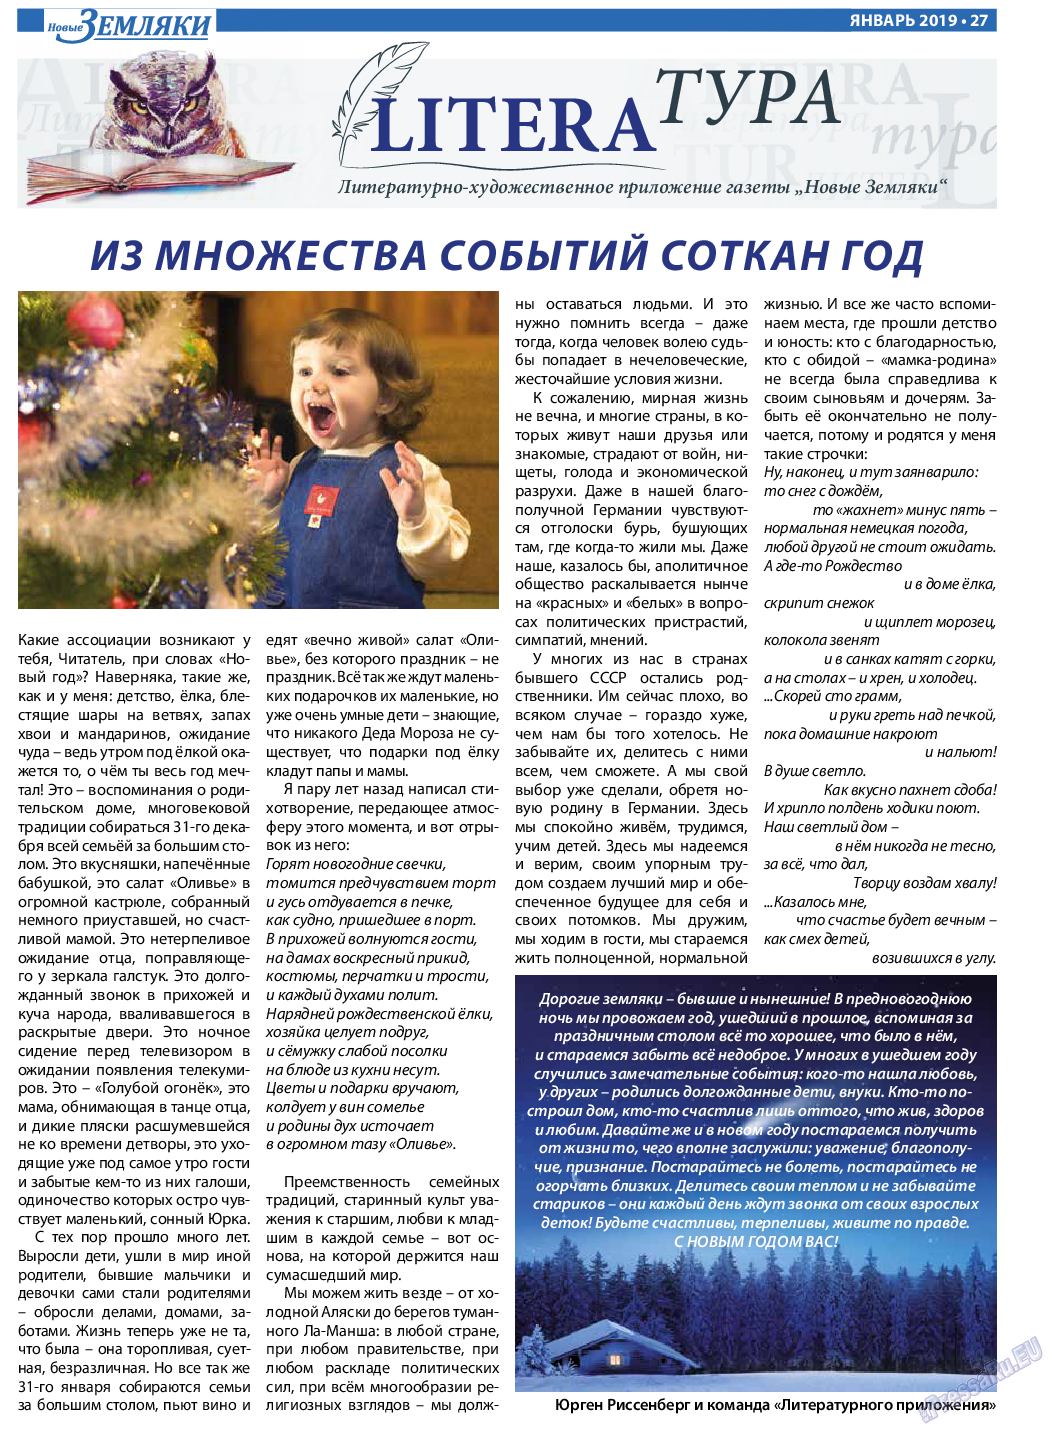 Новые Земляки, газета. 2019 №1 стр.27